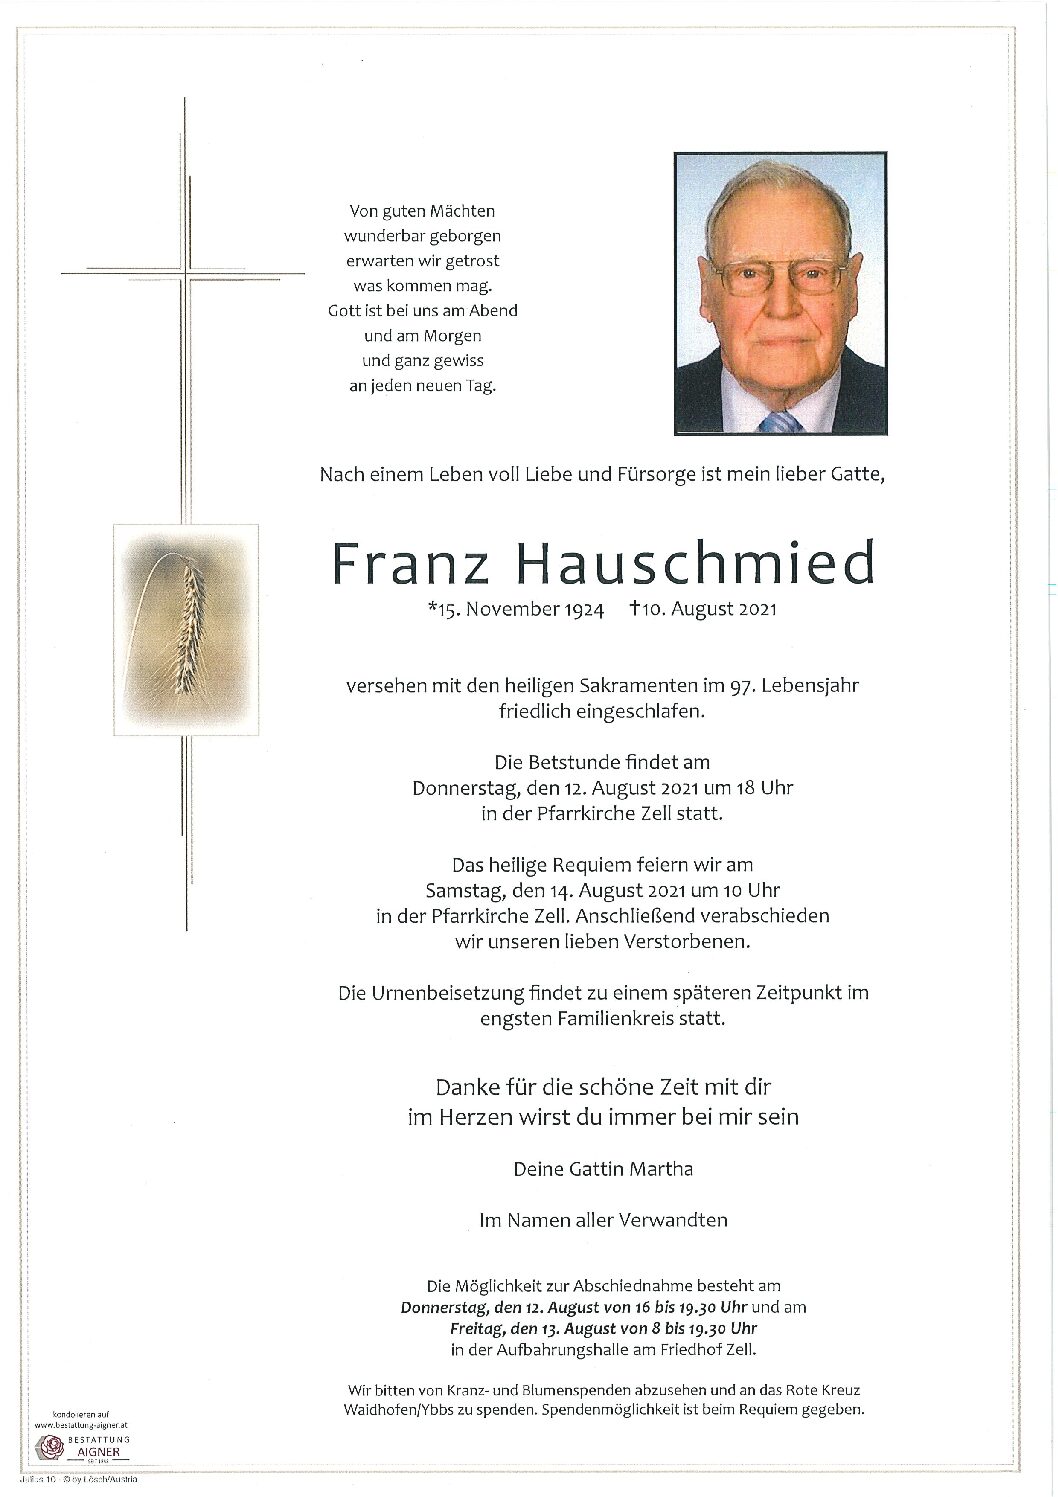 Franz Hauschmied